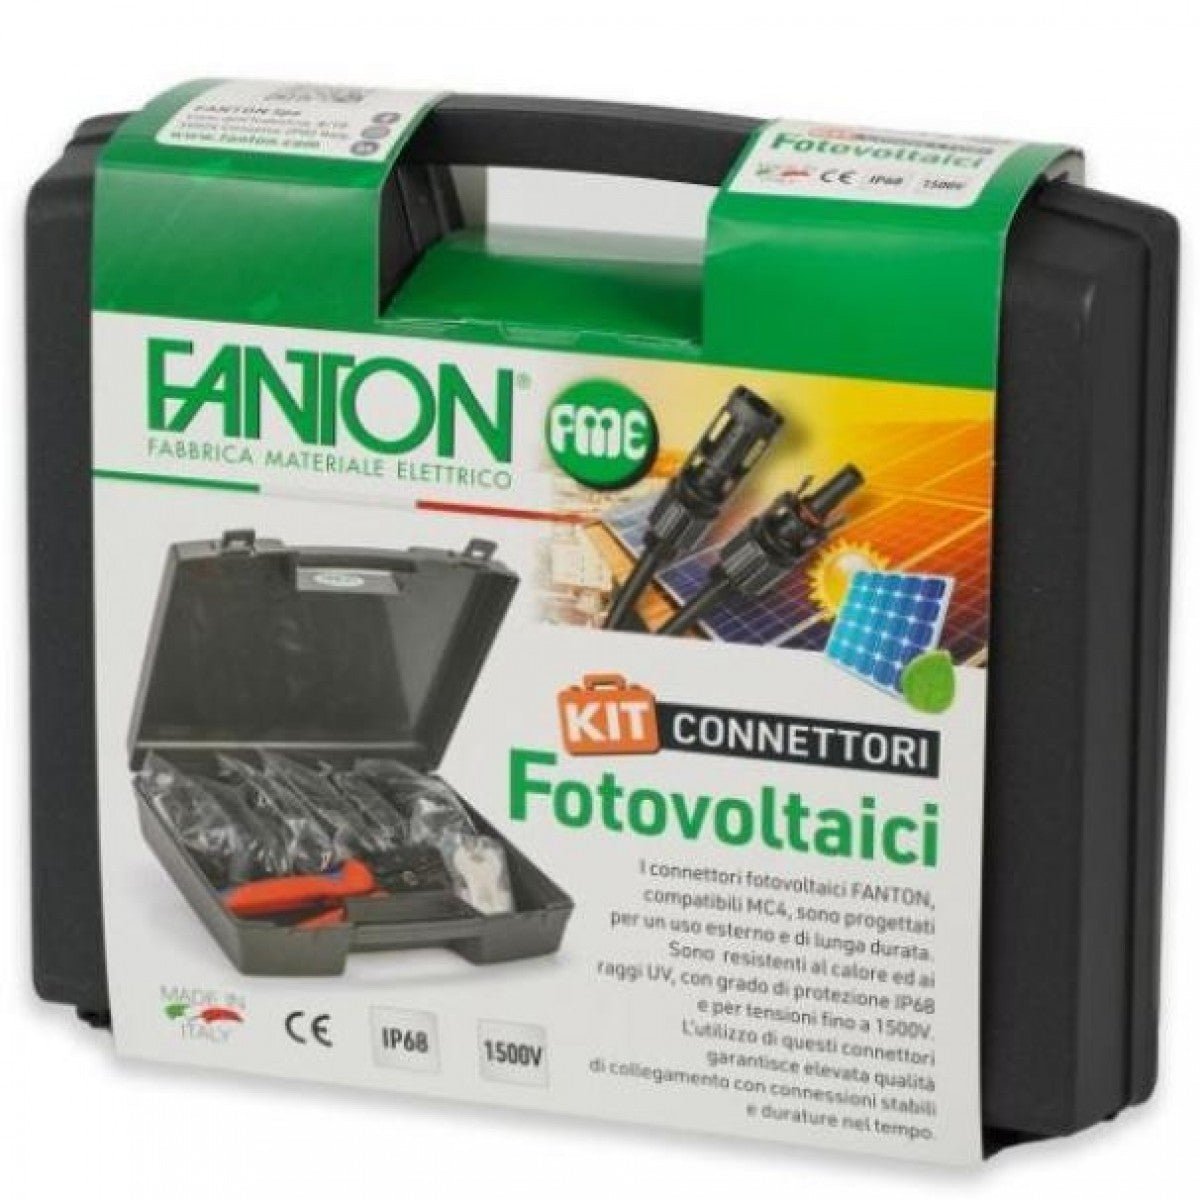 FANTON A9999 Kit fotovoltaico connettori + pinza crimpatrice + coppia chiavi accessori montaggi impianto pannelli solari - puntoluceled